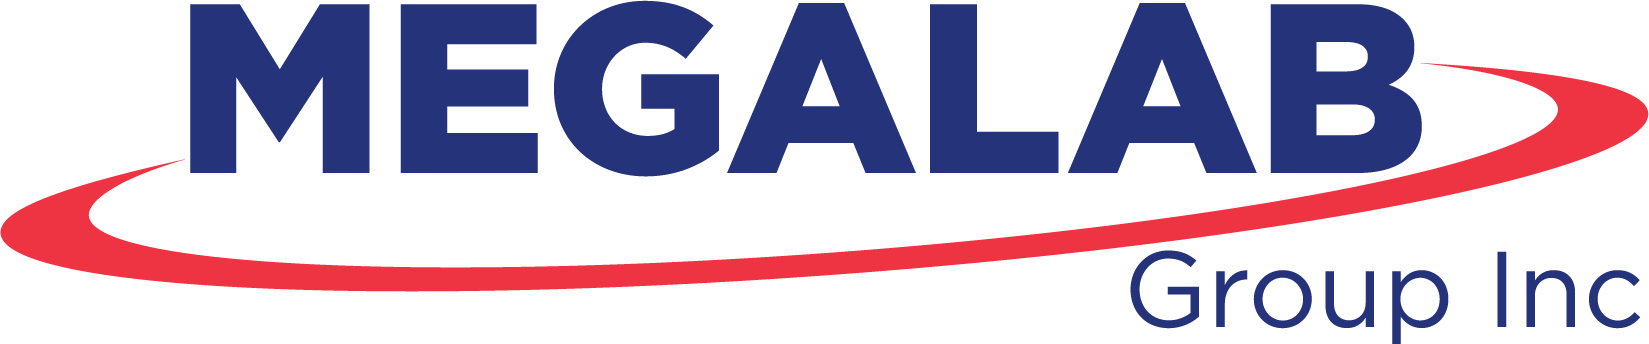 Megalab logo